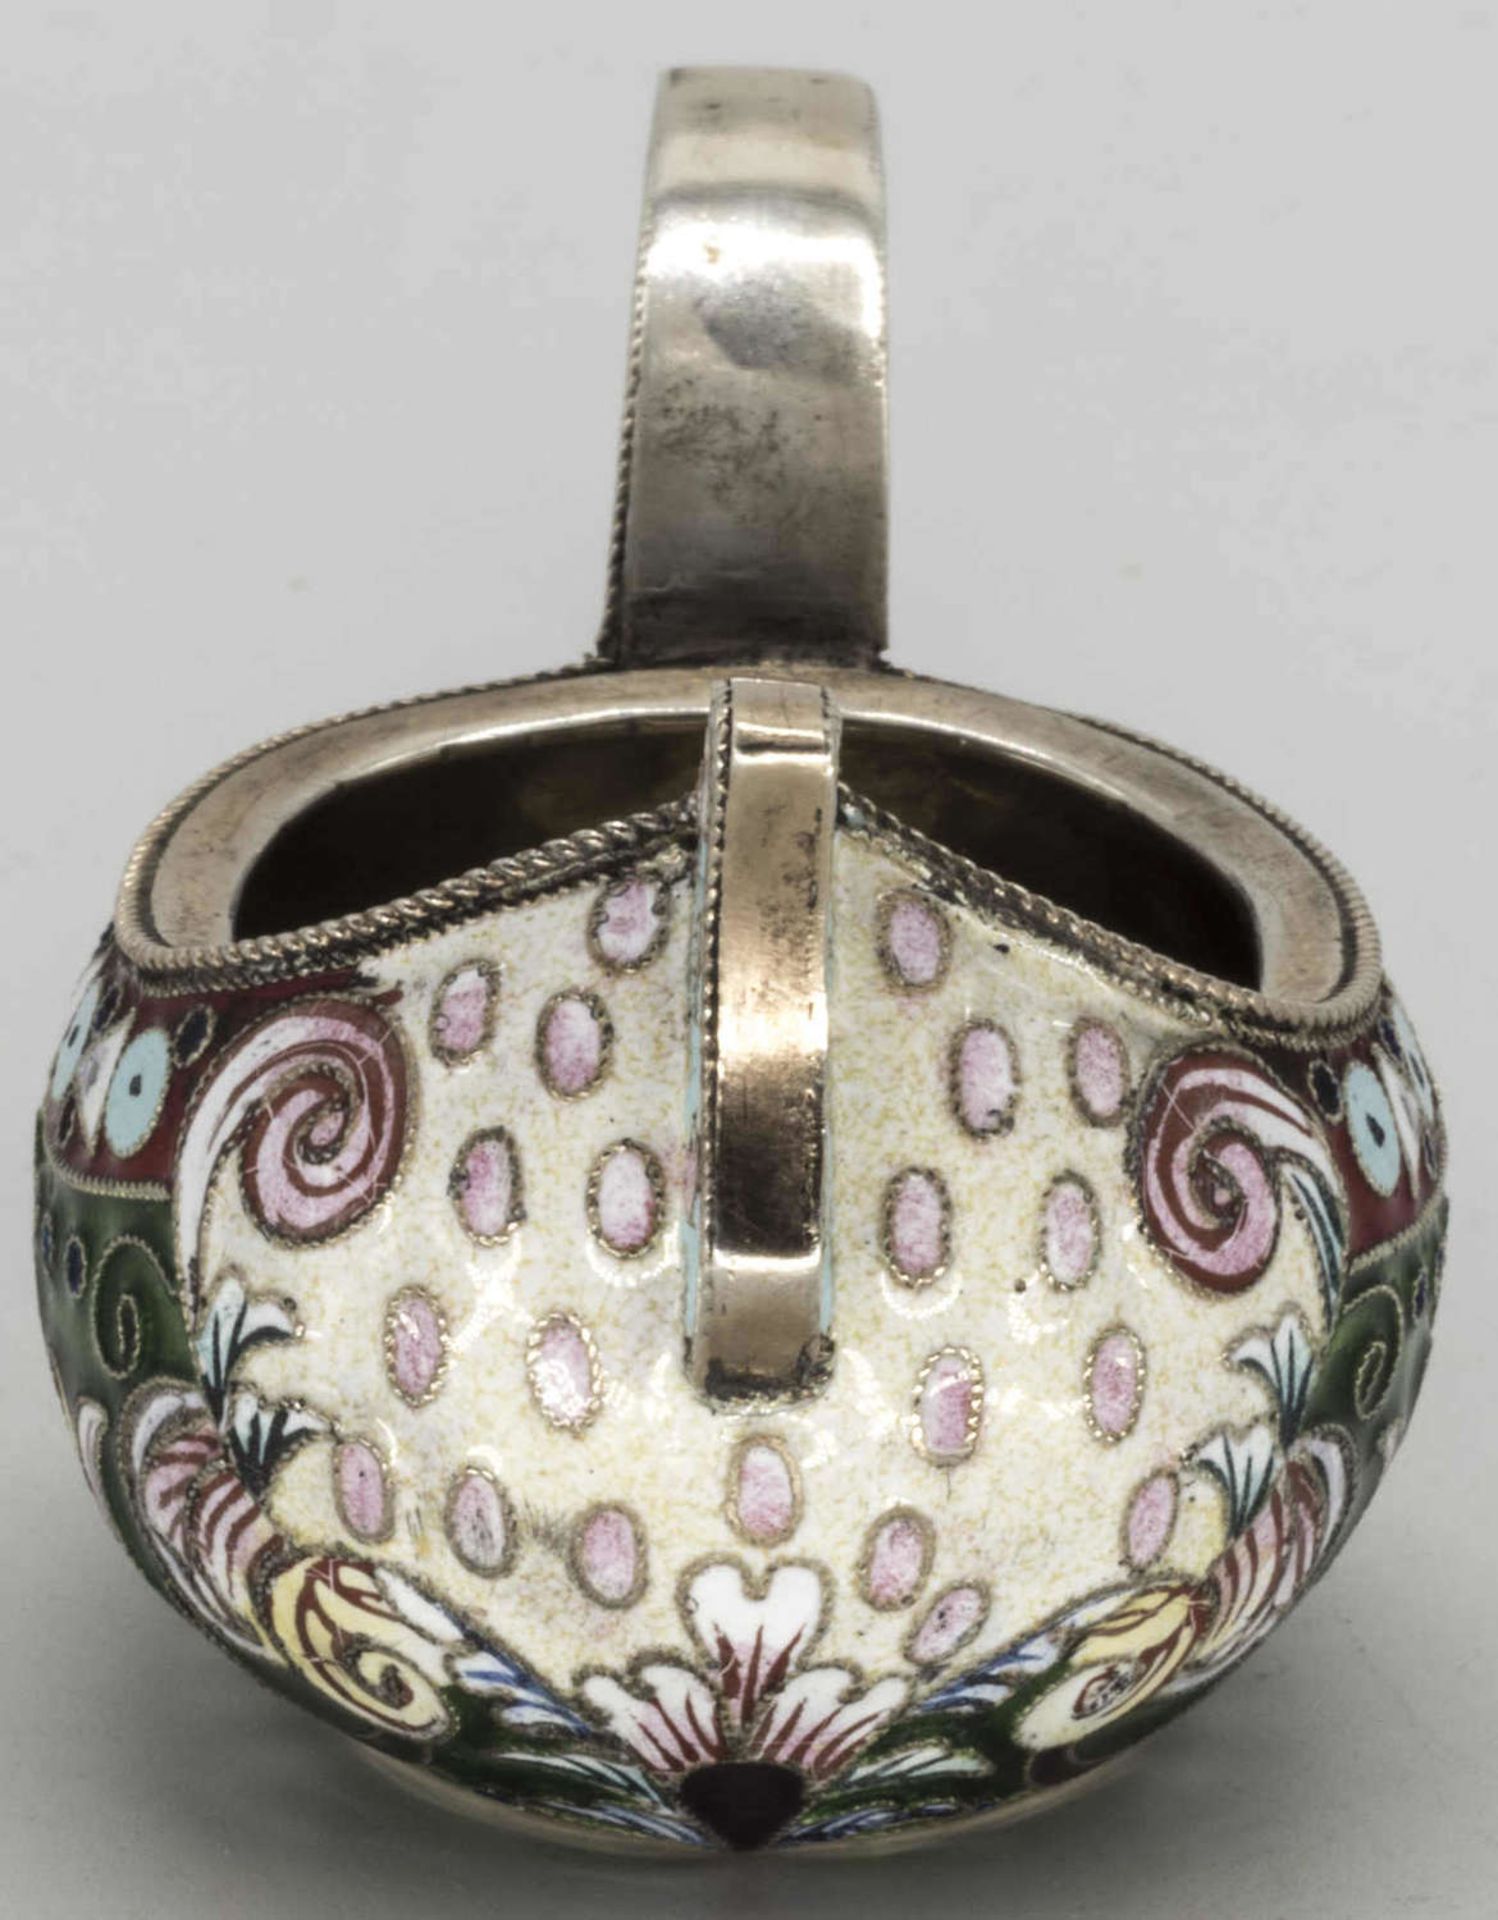 Russischer Cloisonné Kowsch, (1899 - 1908), Silber, oval, verschiedenfarbig floral ornamental - Image 2 of 6